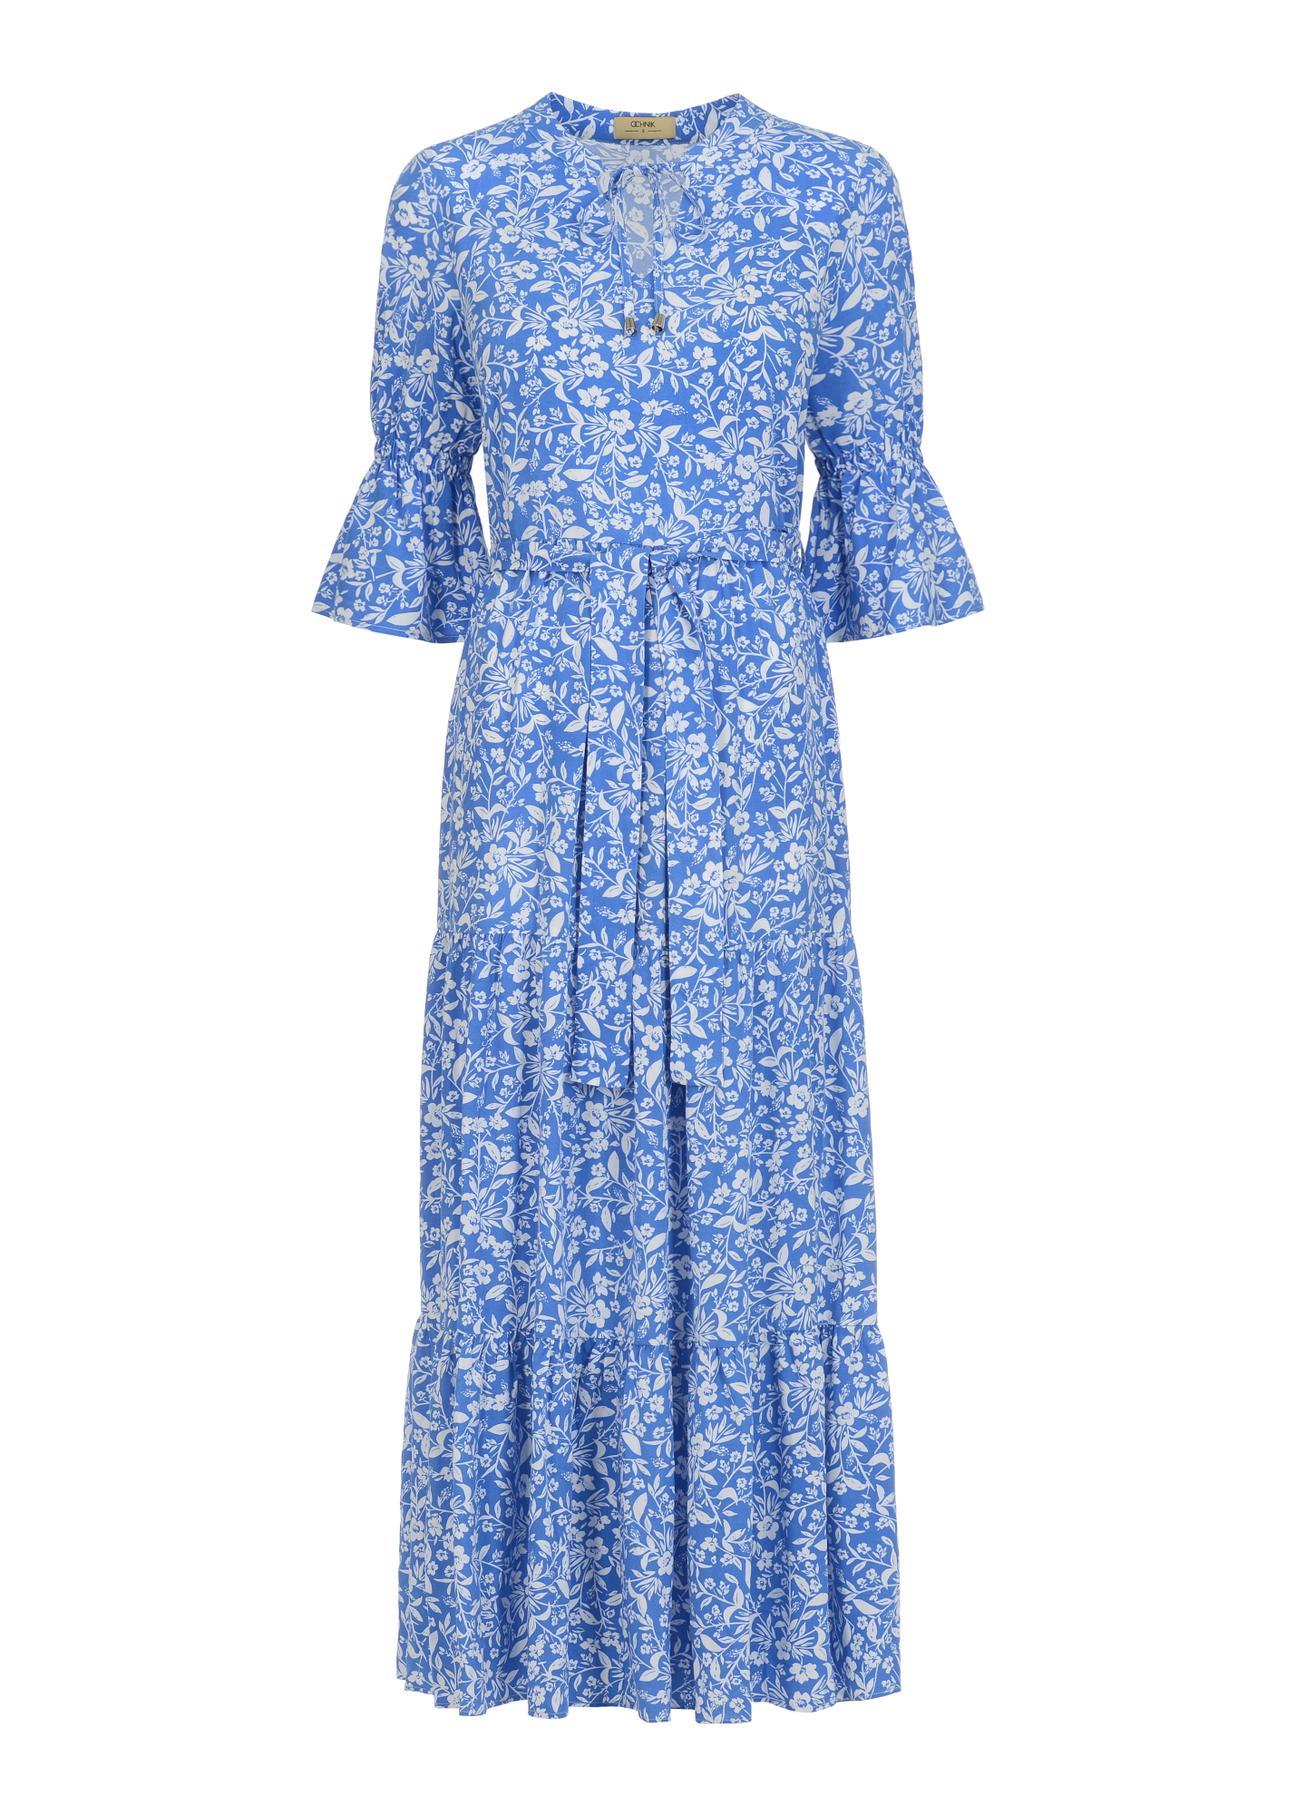 Długa niebieska sukienka w kwiaty SUKDT-0155-61(W23)